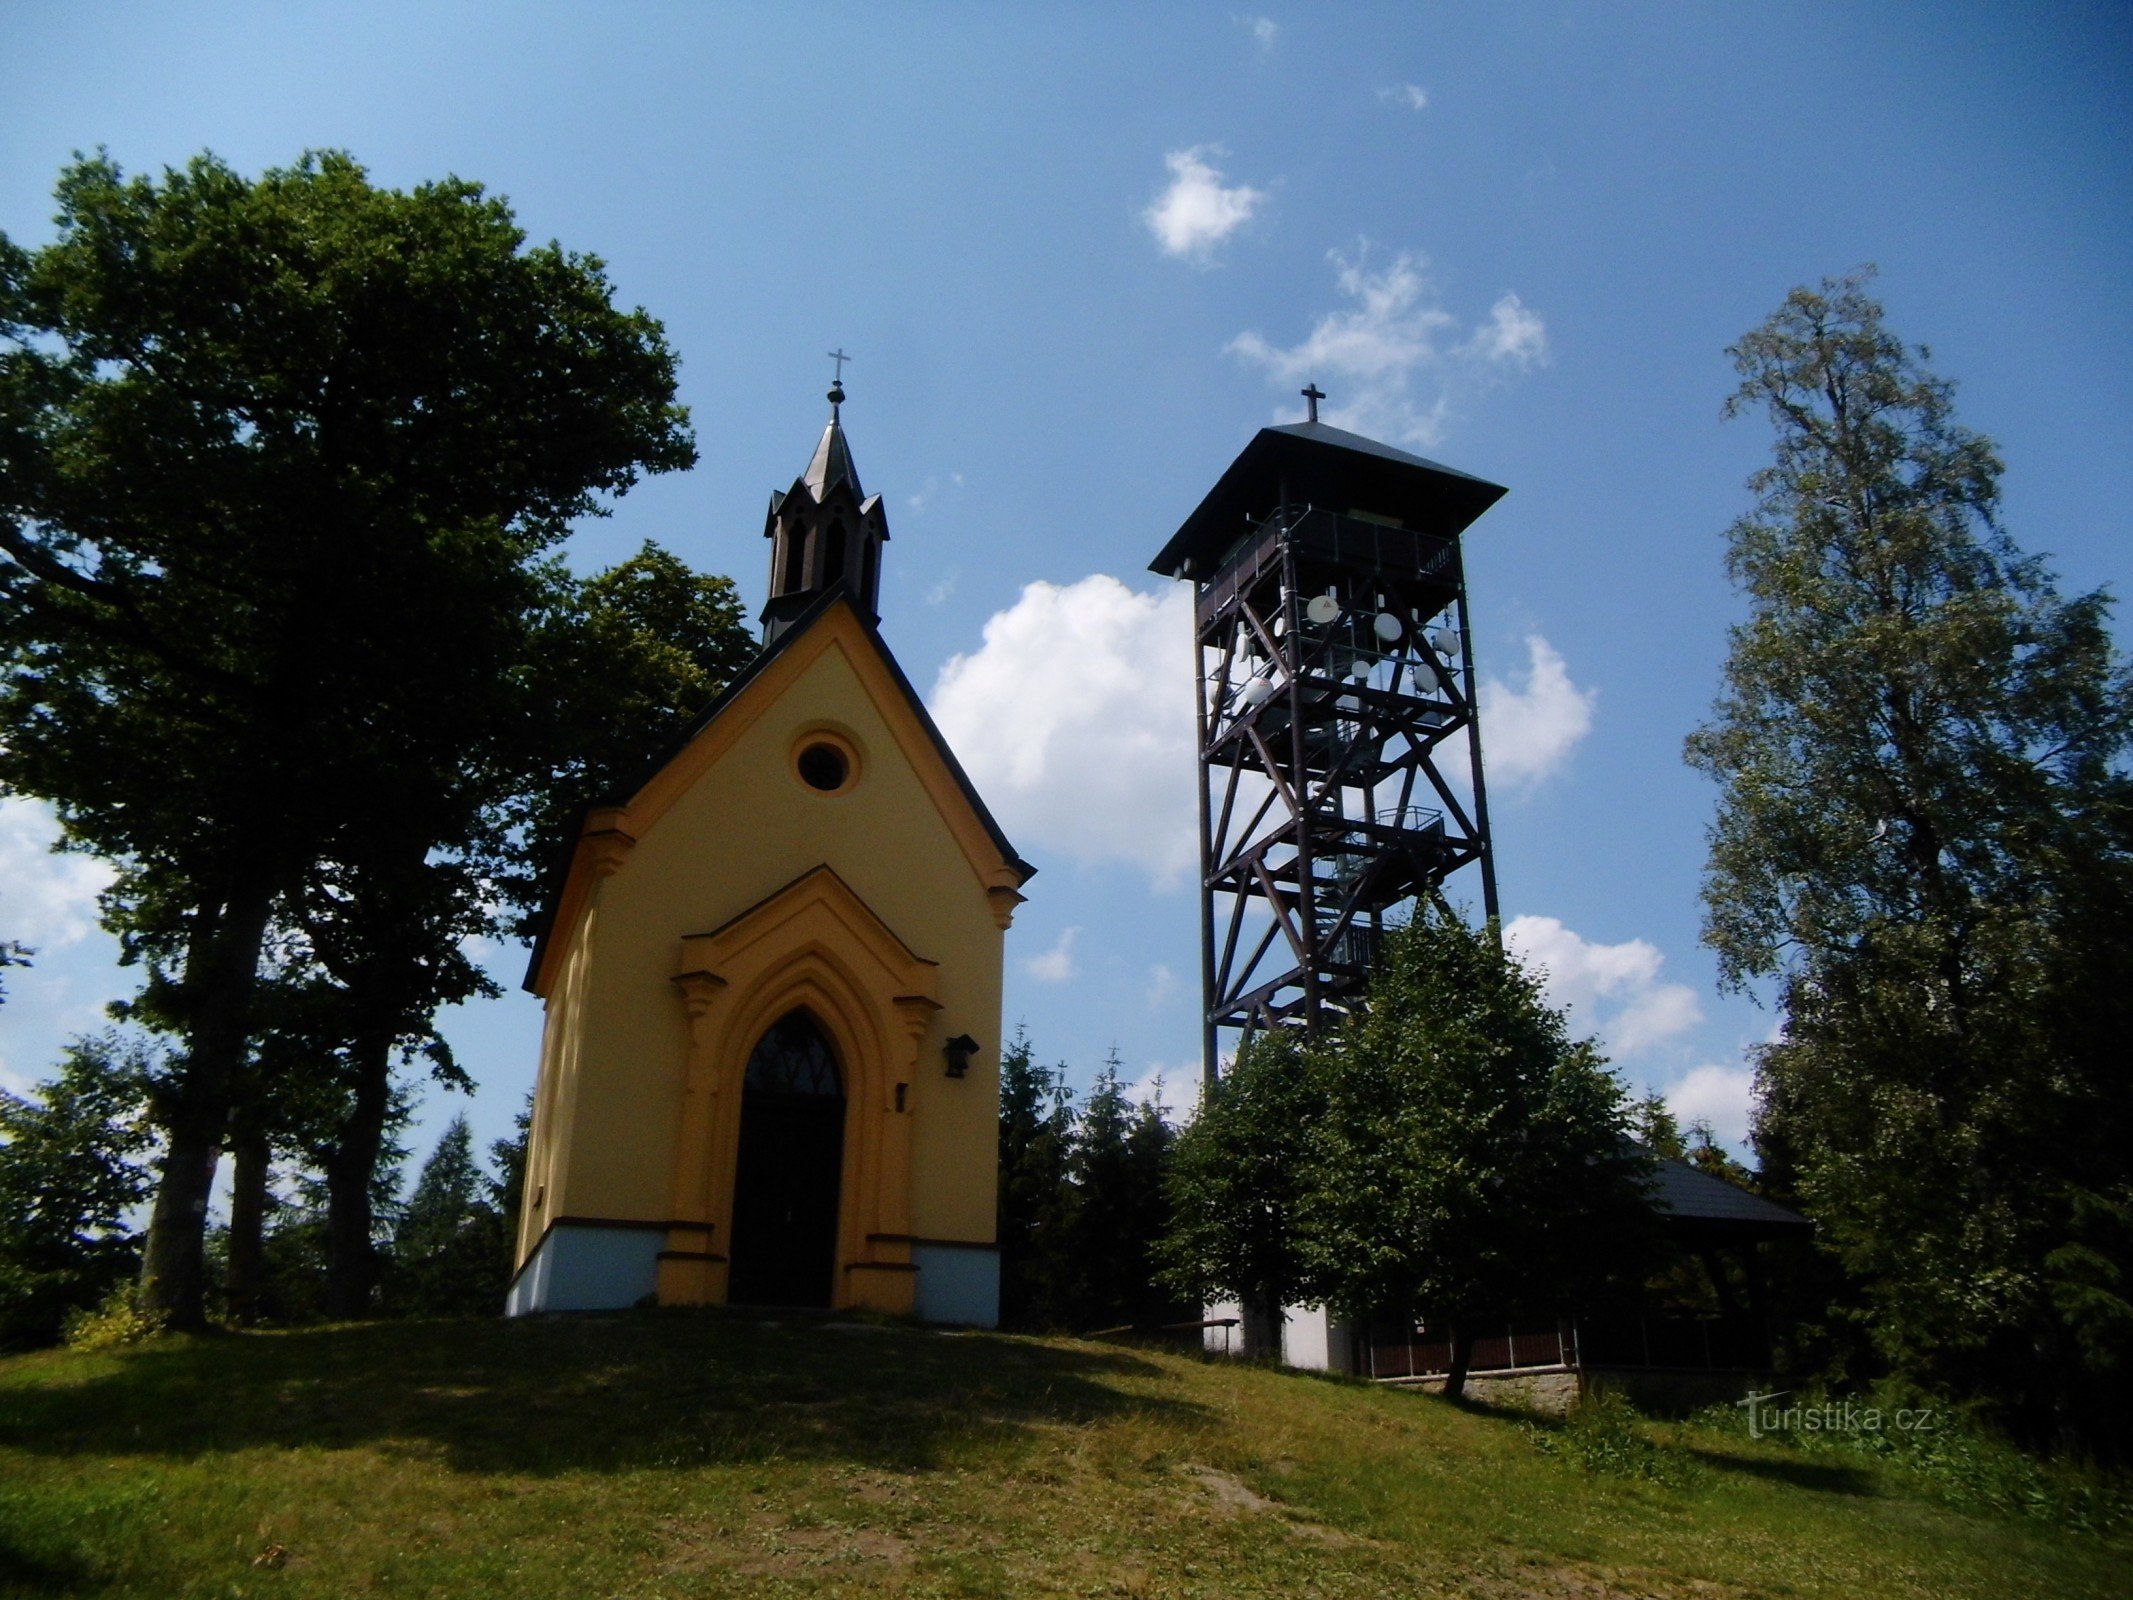 从 Pocinovice 到 Kdyn，途经瞭望塔和圣约翰教堂。 市场